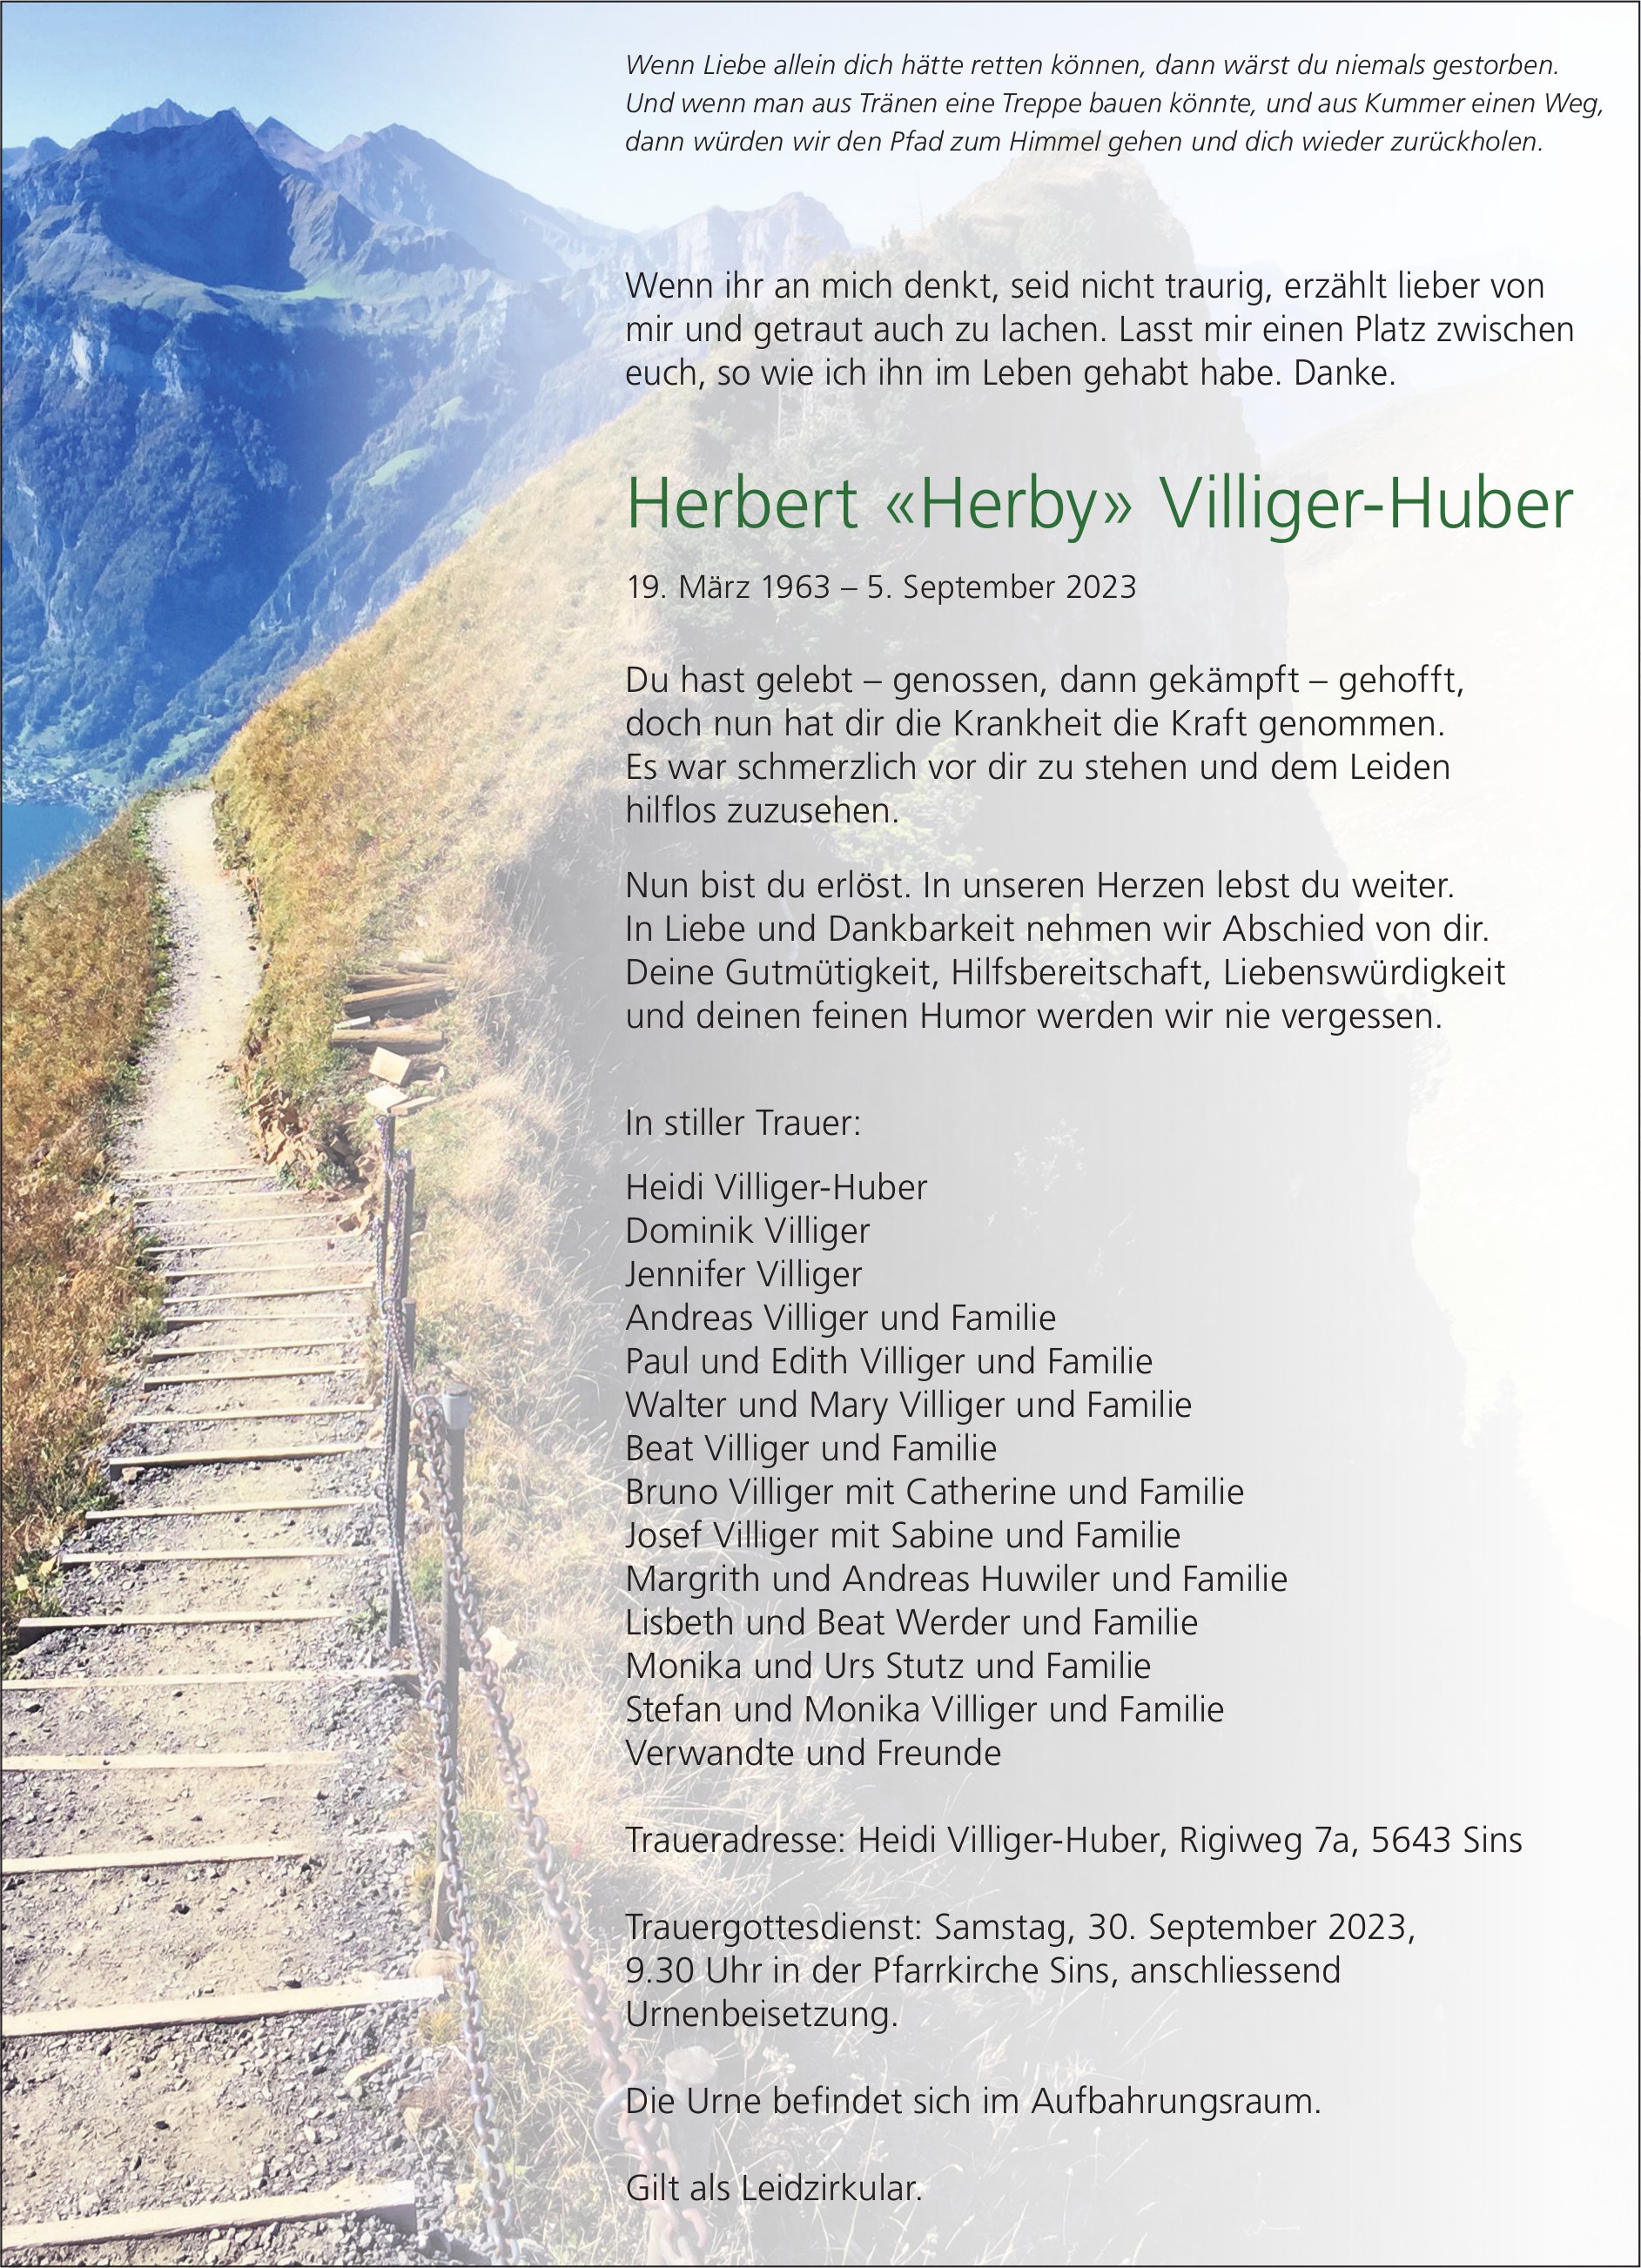 Villiger-Huber Herbert «Herby», September 2023 / TA